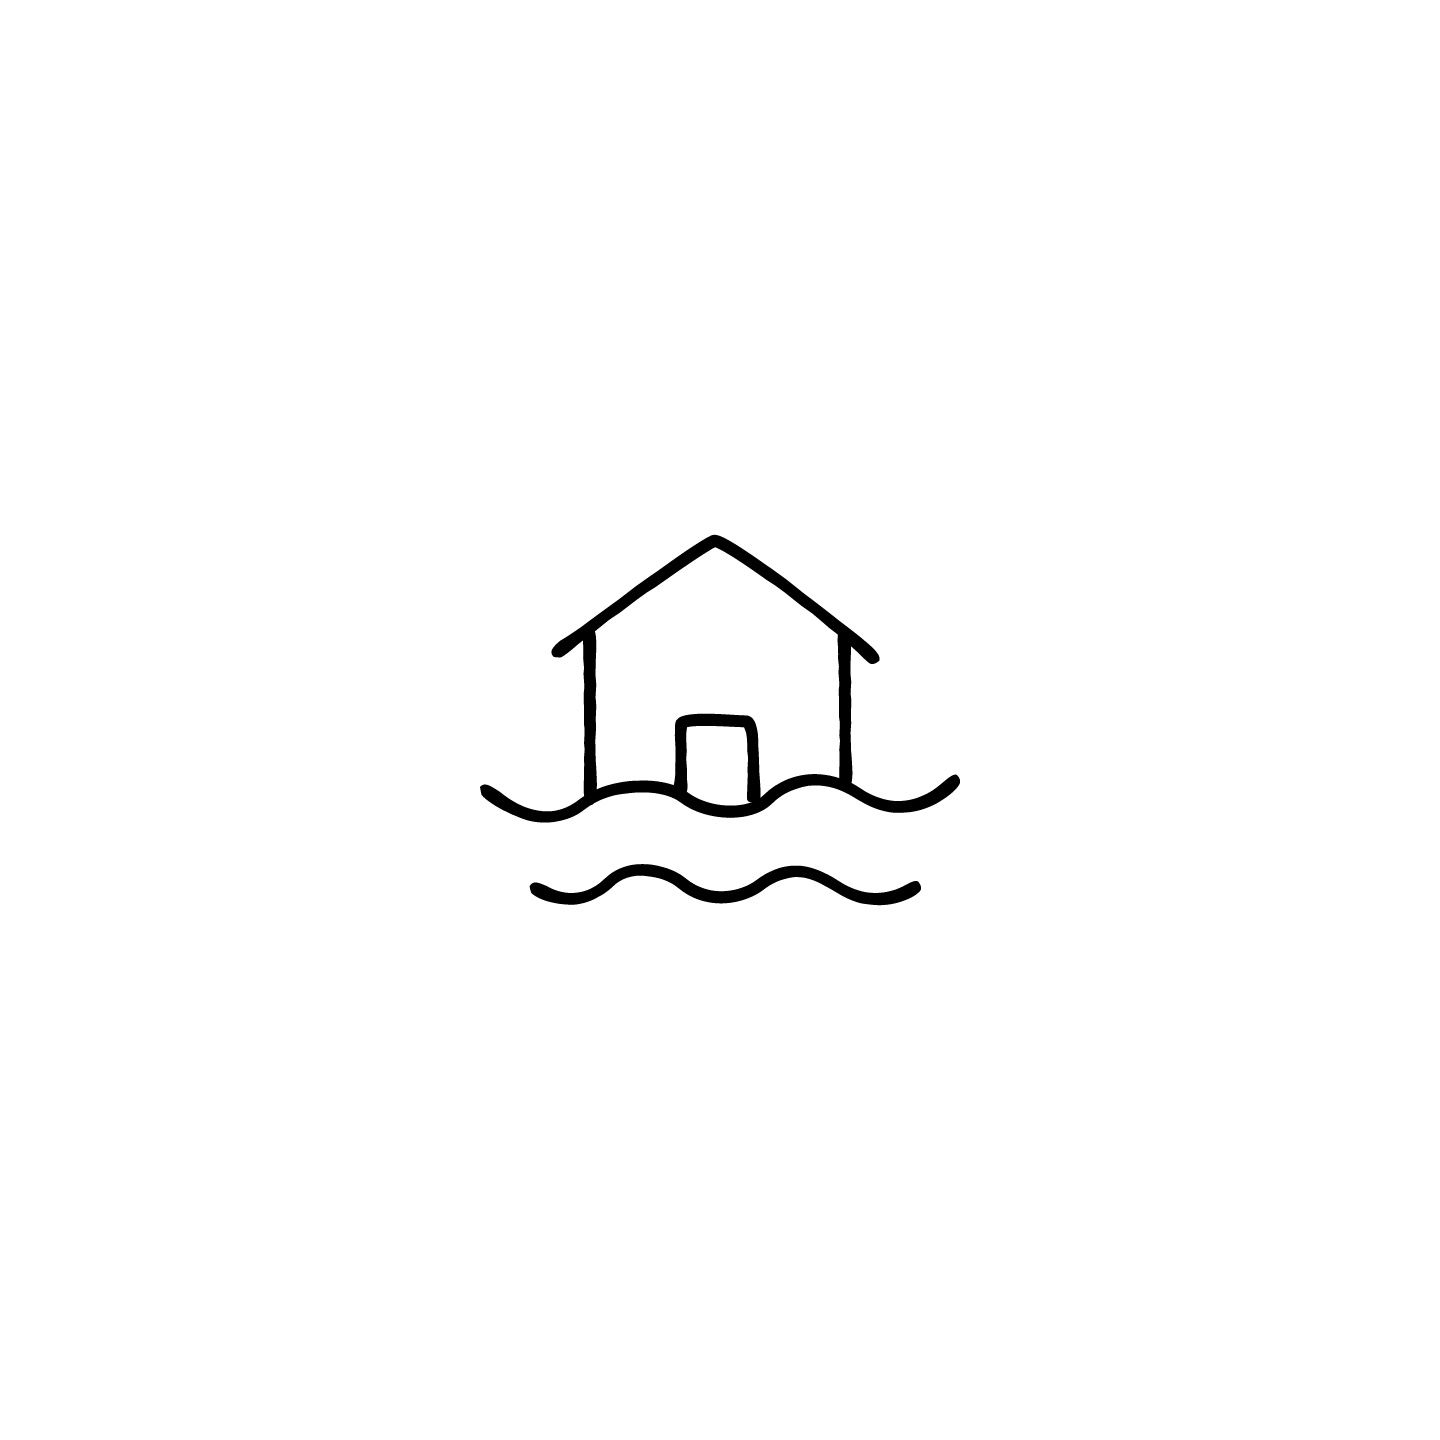 浸水した家のアイコンのアイキャッチ用画像